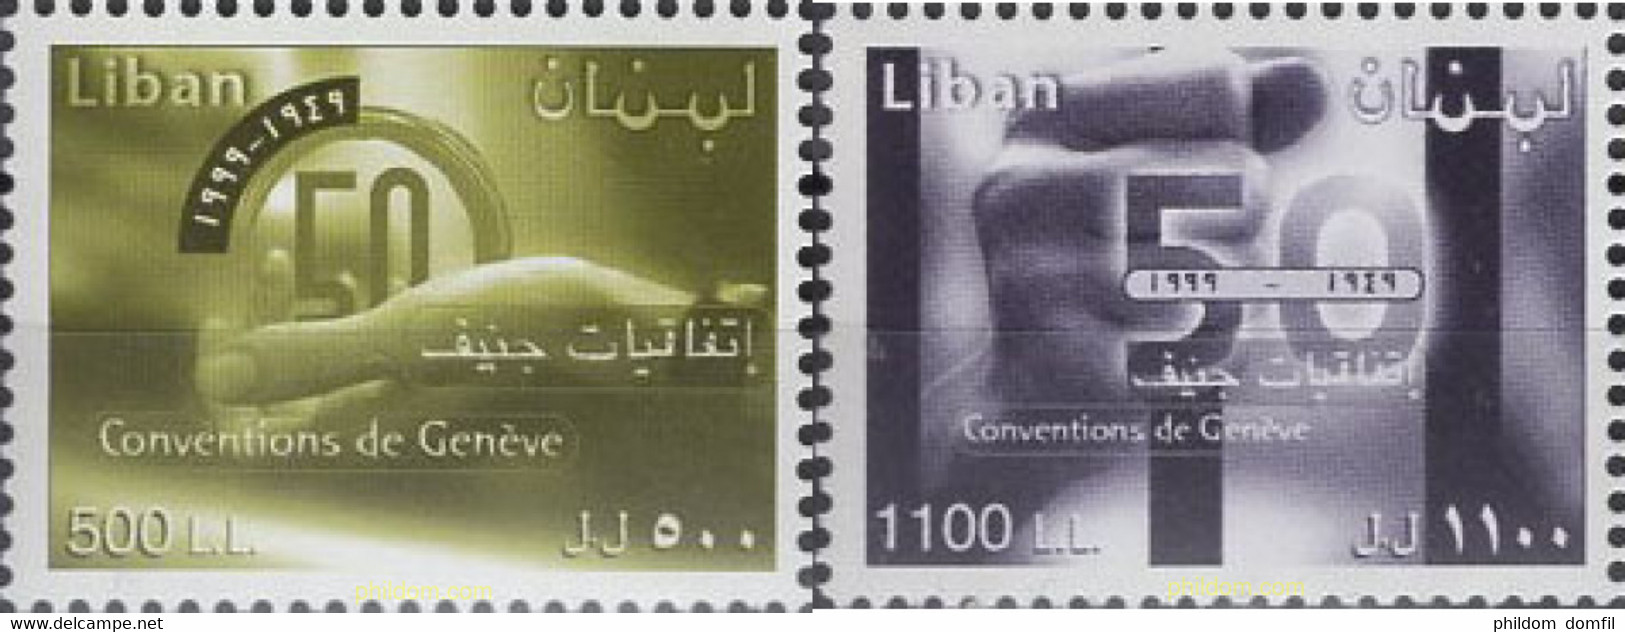 638263 MNH LIBANO 2001 50 ANIVERSARIO DE LA CONVENCION DE GINEBRA DE LA CRUZ ROJA - Liban